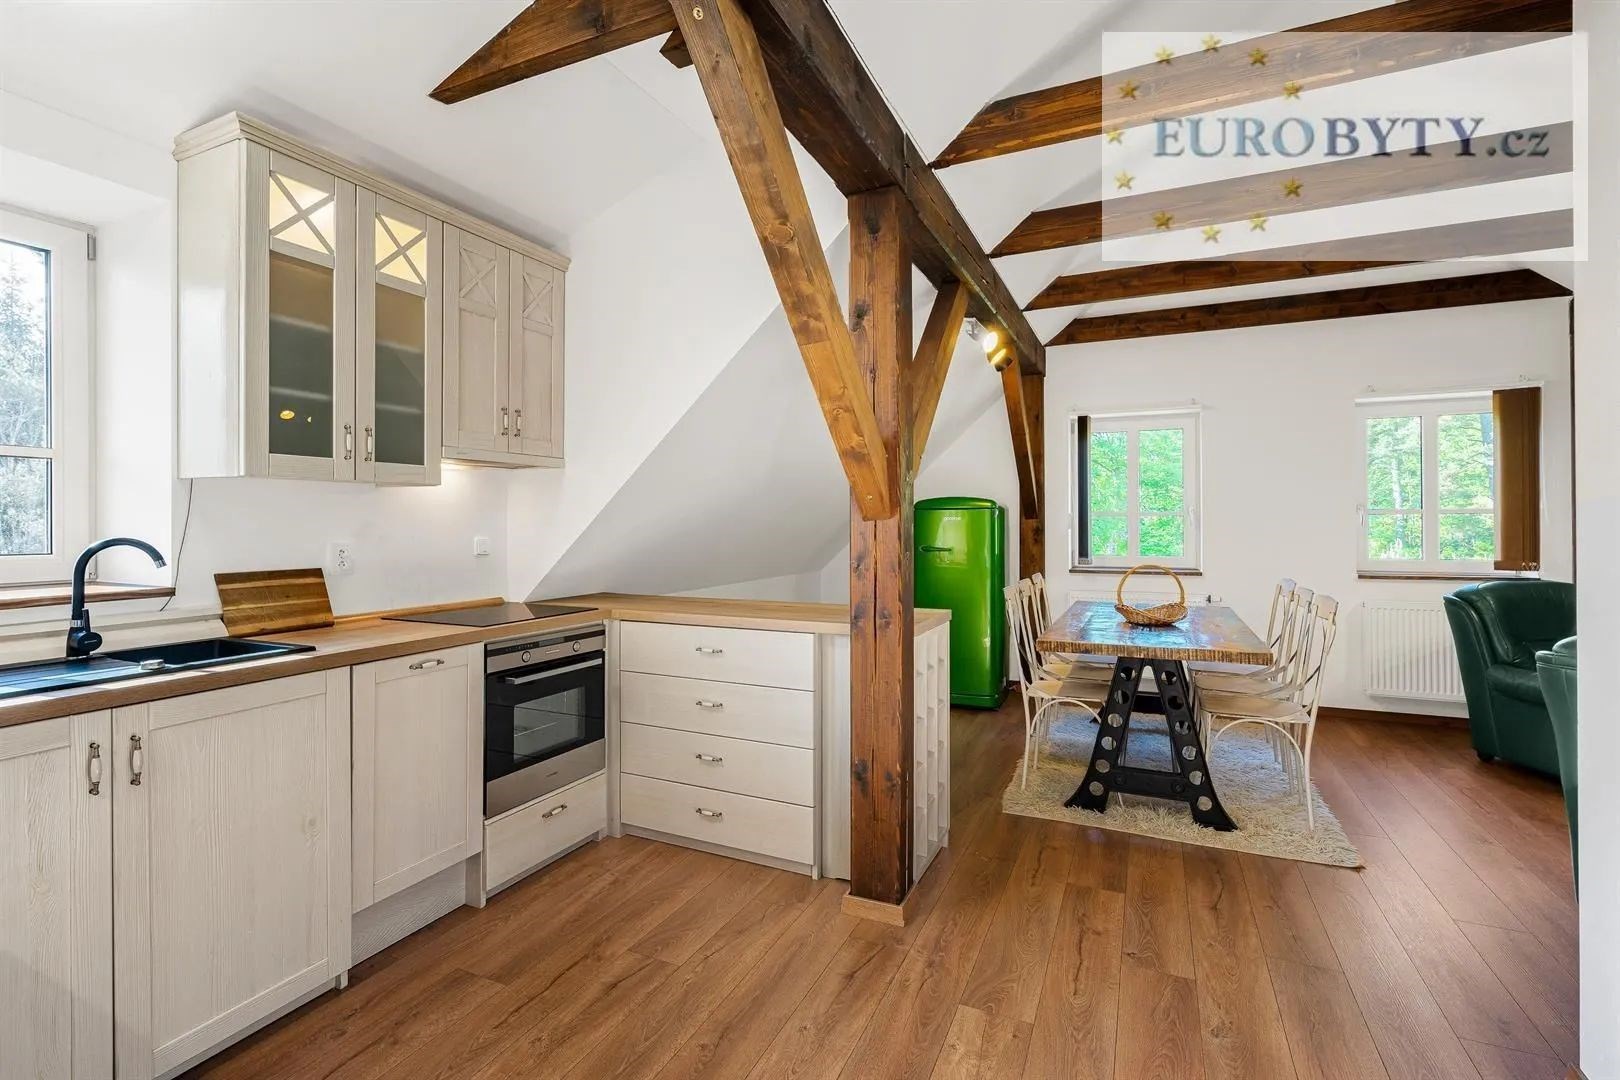 kuchyně s otevírá se do obývacího prostoru, dřevěná podlaha, trámový strop, a trouba